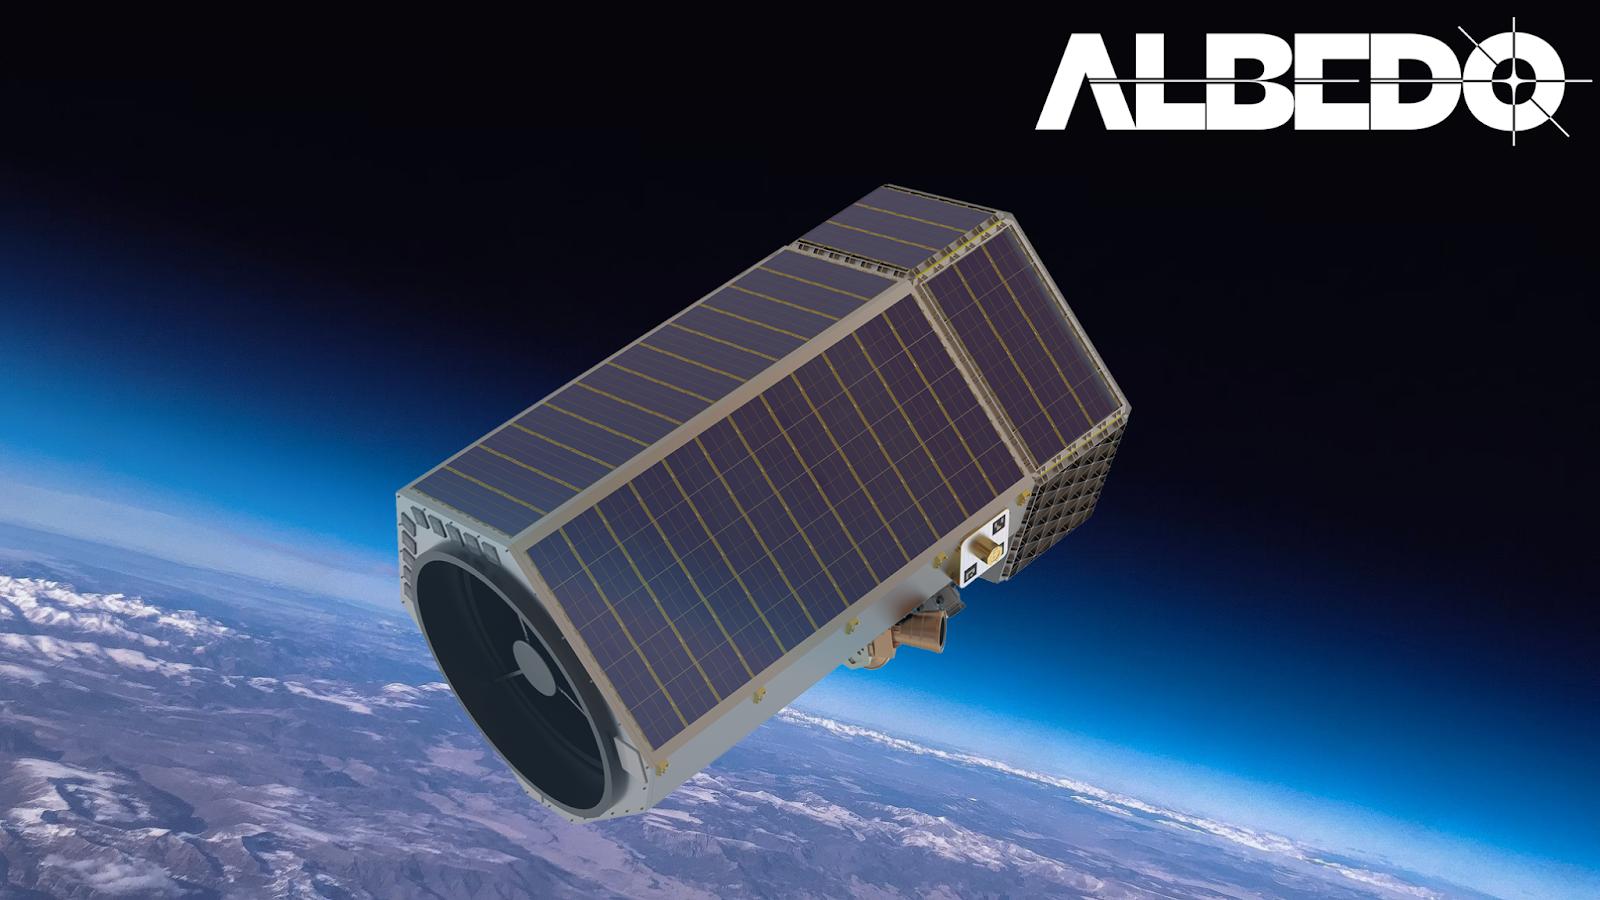 Albedo satellite